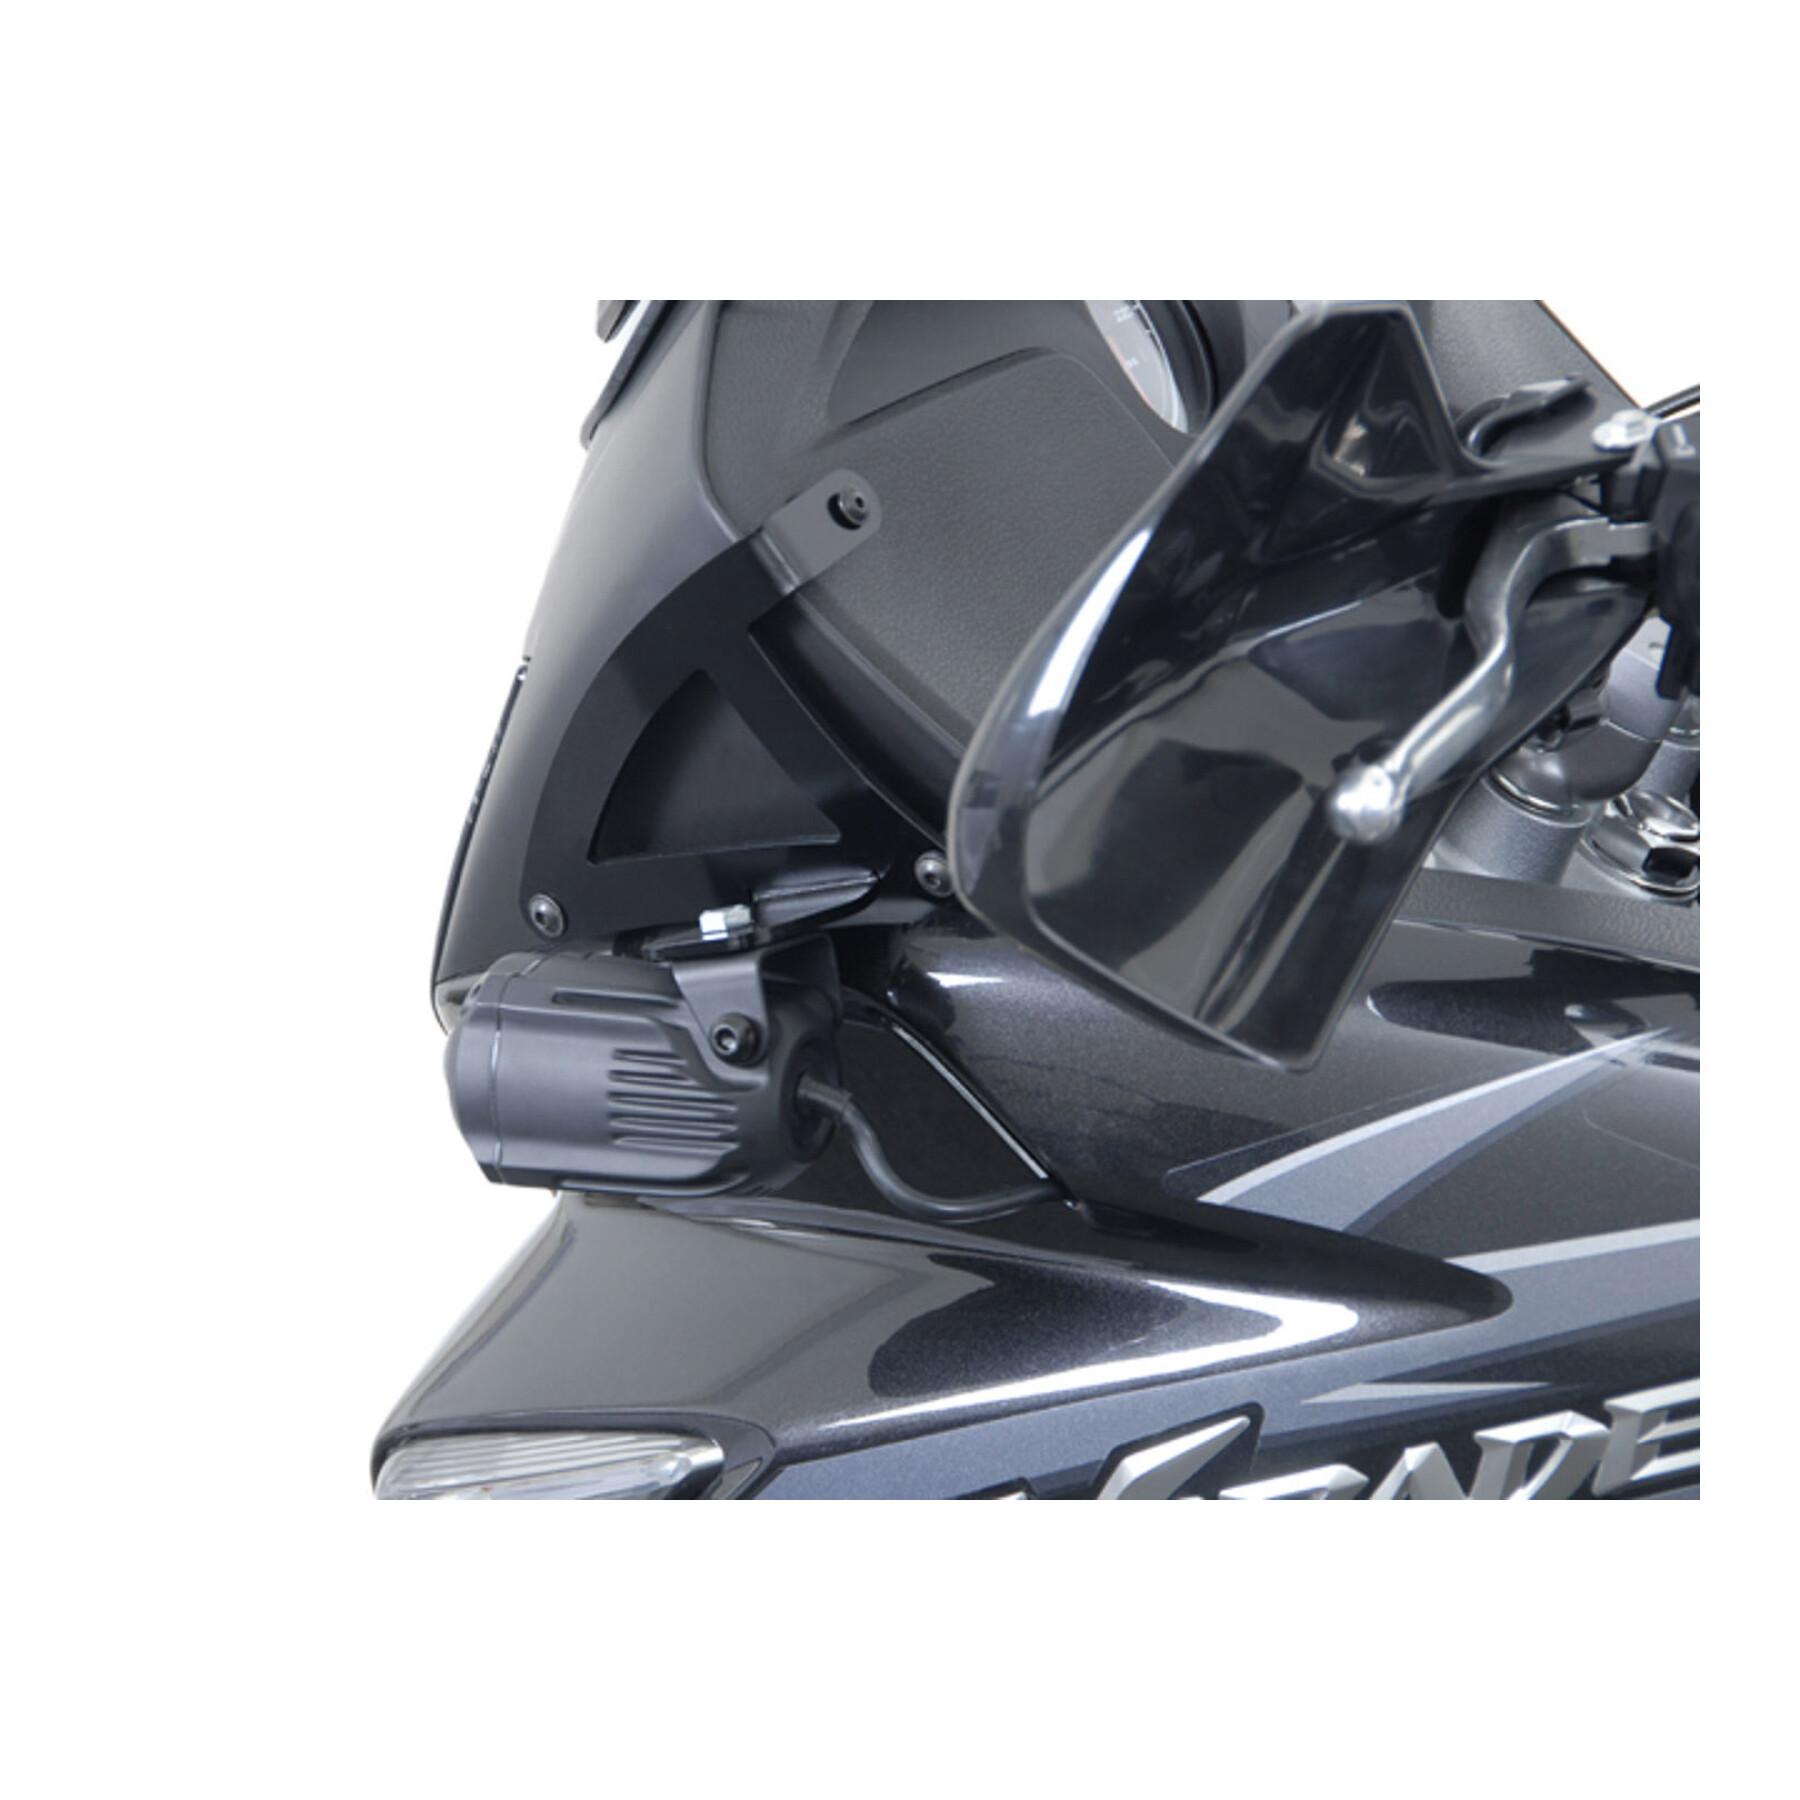 Luz led adicional para motos Sw-Motech Xl1000v Varadero (01-11)